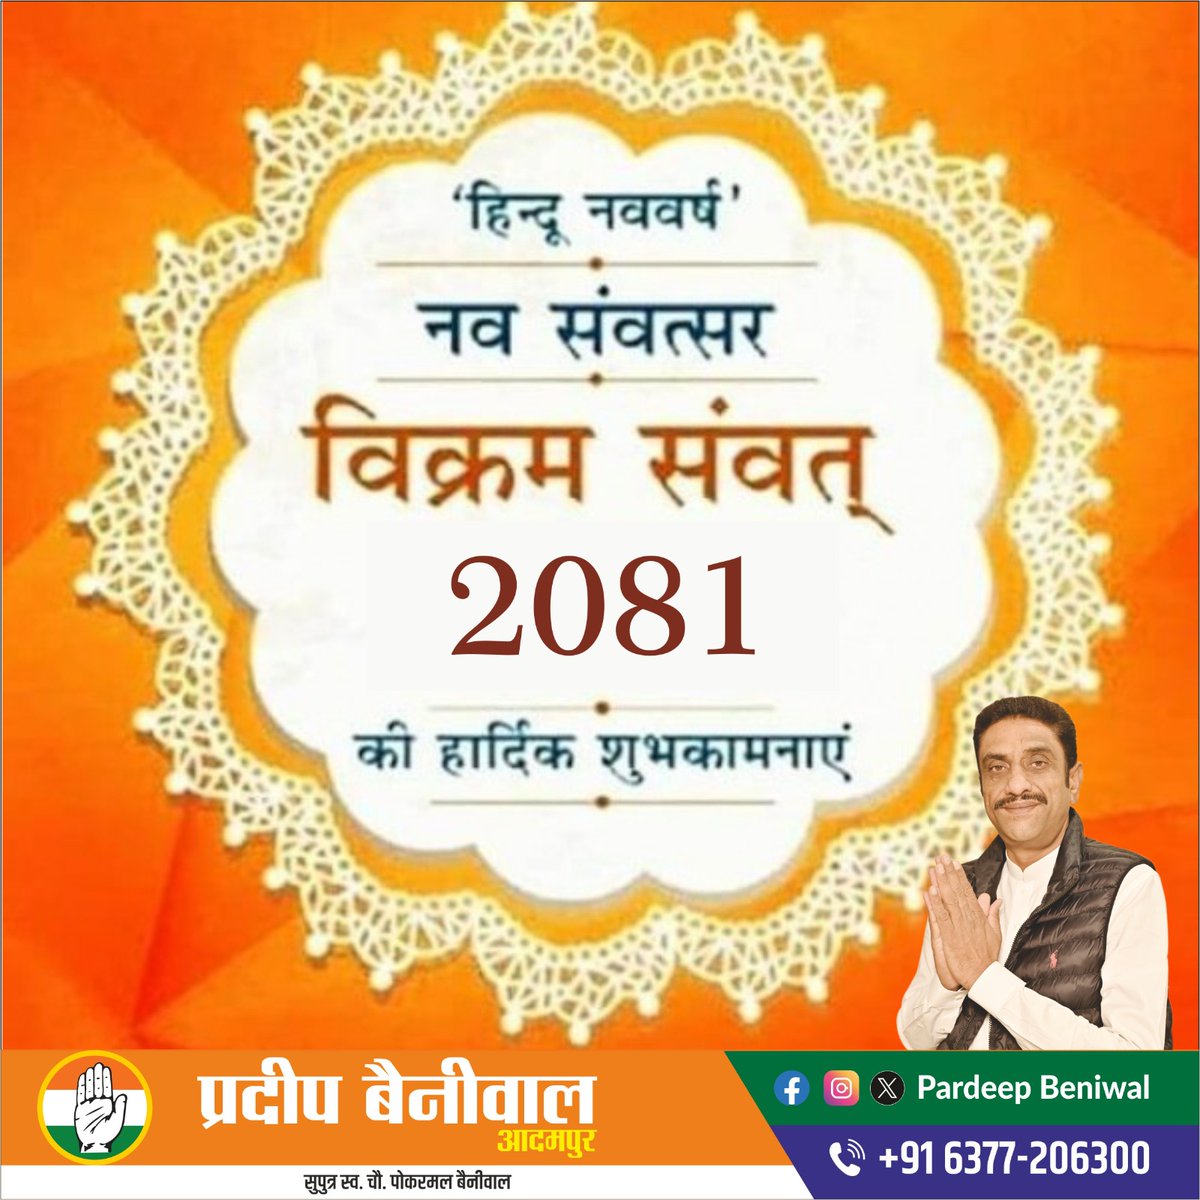 हिंदू नववर्ष विक्रम संवत 2081 की हार्दिक शुभकामनाएं।
#Adampur #HaryanaCongress #IndianNationalCongress #congress #CongressParty #RahulGandhi #RahulGandhiVoiceOfIndia